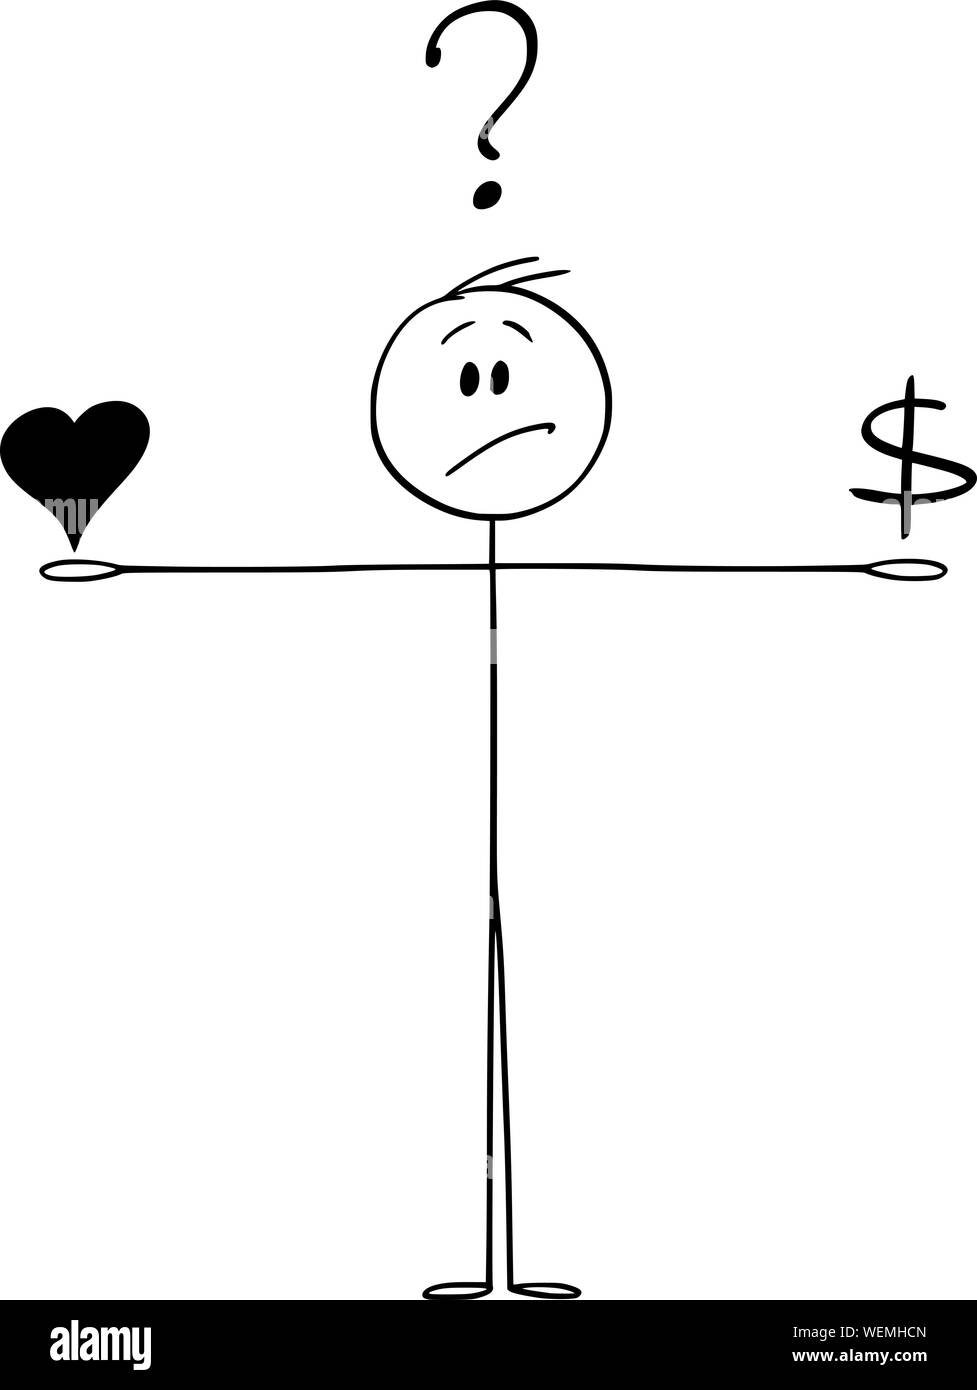 Vektor cartoon Strichmännchen Zeichnen konzeptionelle Darstellung der Mann balancing Liebe und Geld und wenn man bedenkt, dass es. Herd- und Dollar Symbole auf der Skala. Stock Vektor